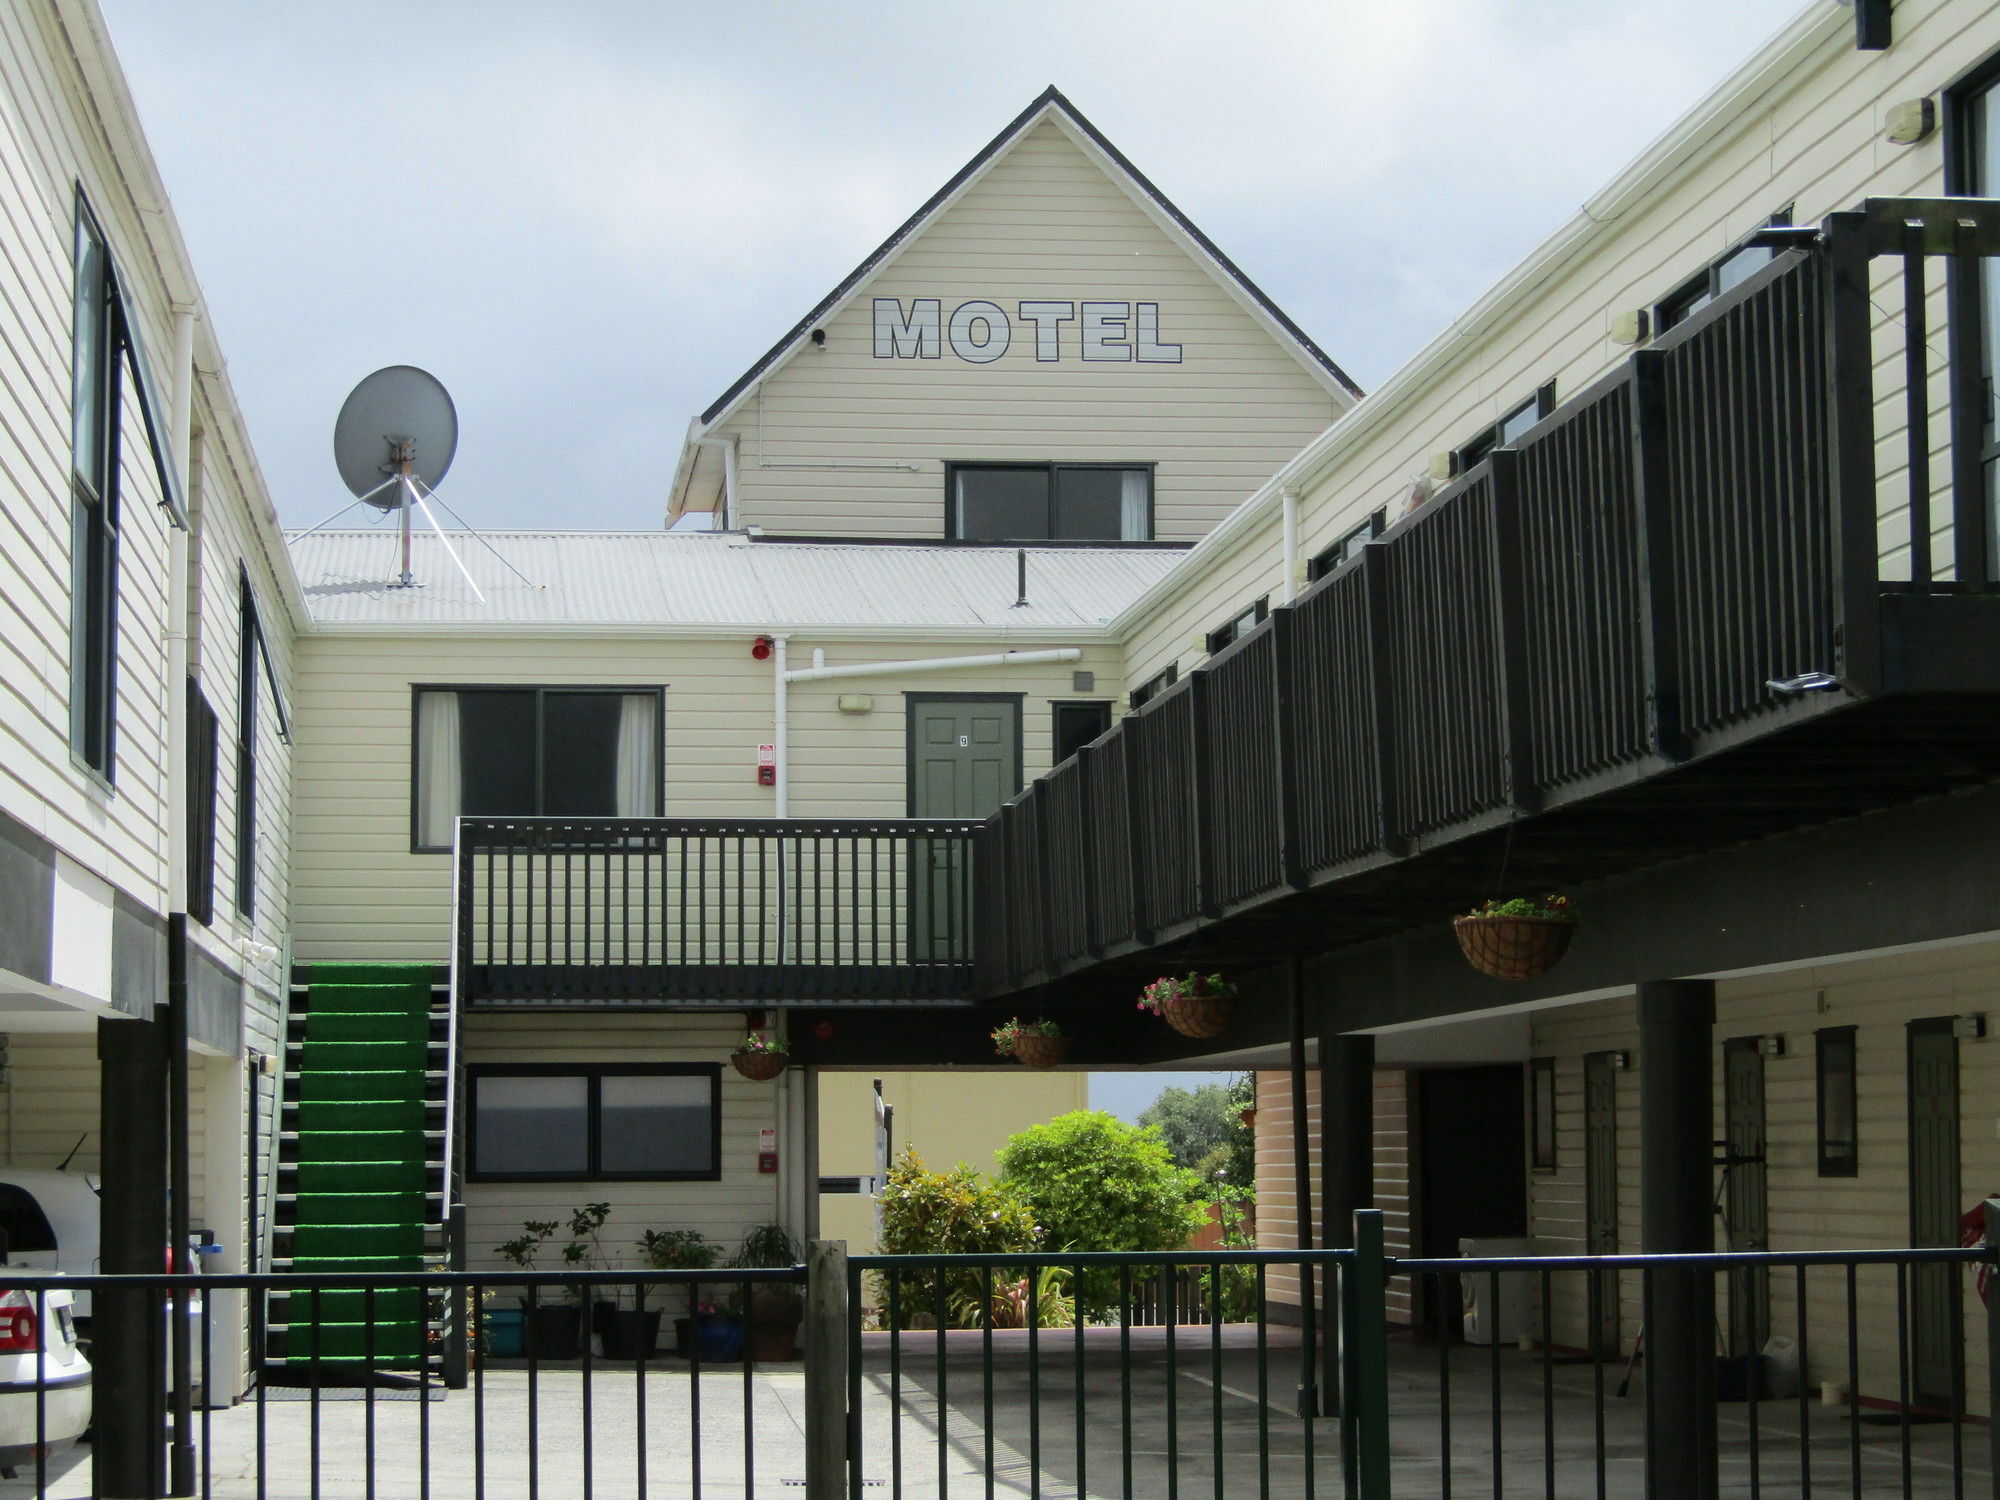 רוטורואה Pohutu Lodge Motel מראה חיצוני תמונה